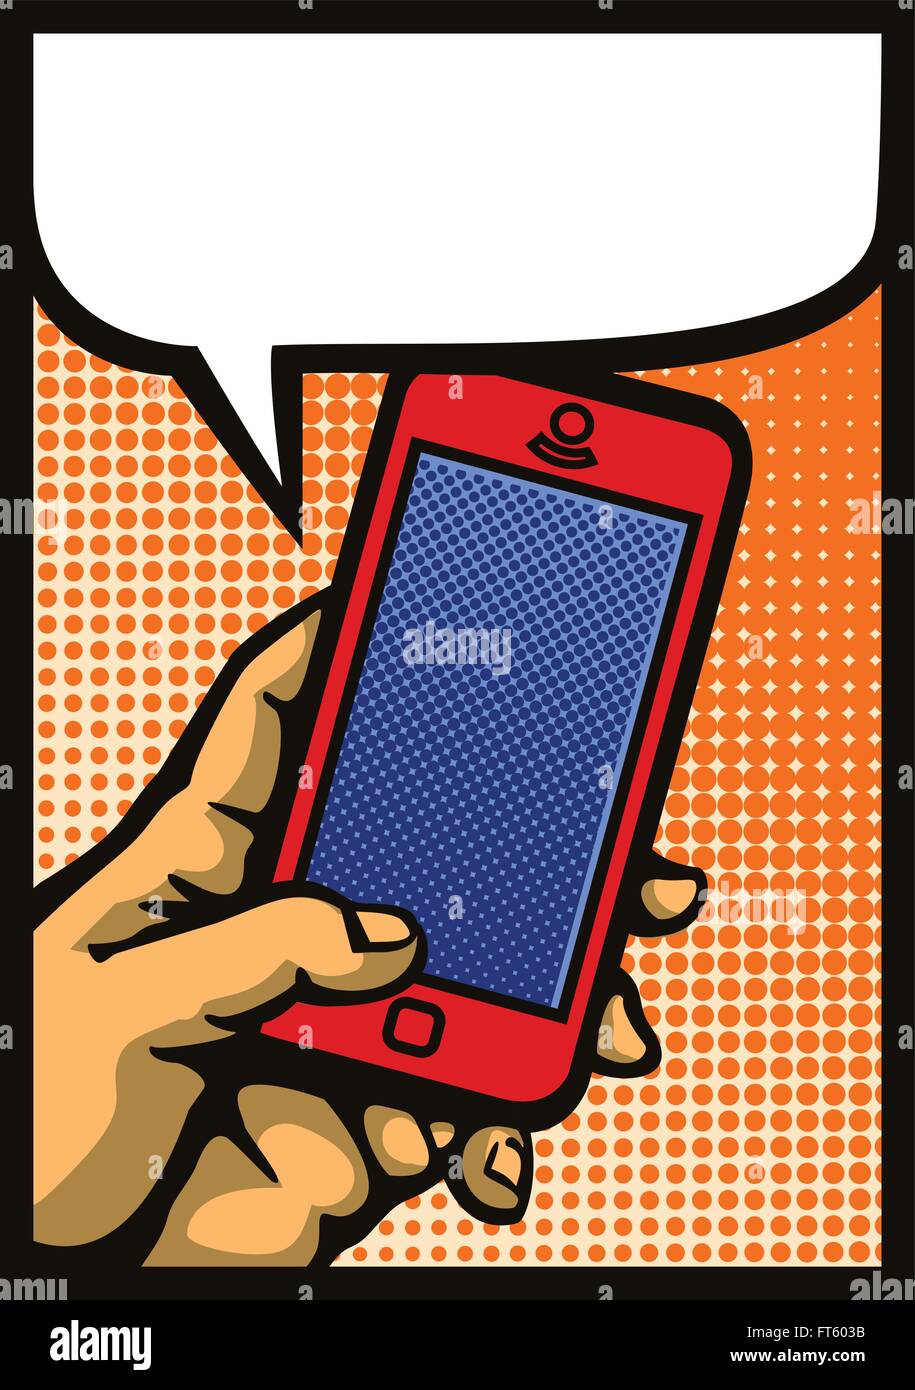 La Pop art style mano azienda smartphone, fumetto telefono cellulare illustrazione vettoriale Illustrazione Vettoriale